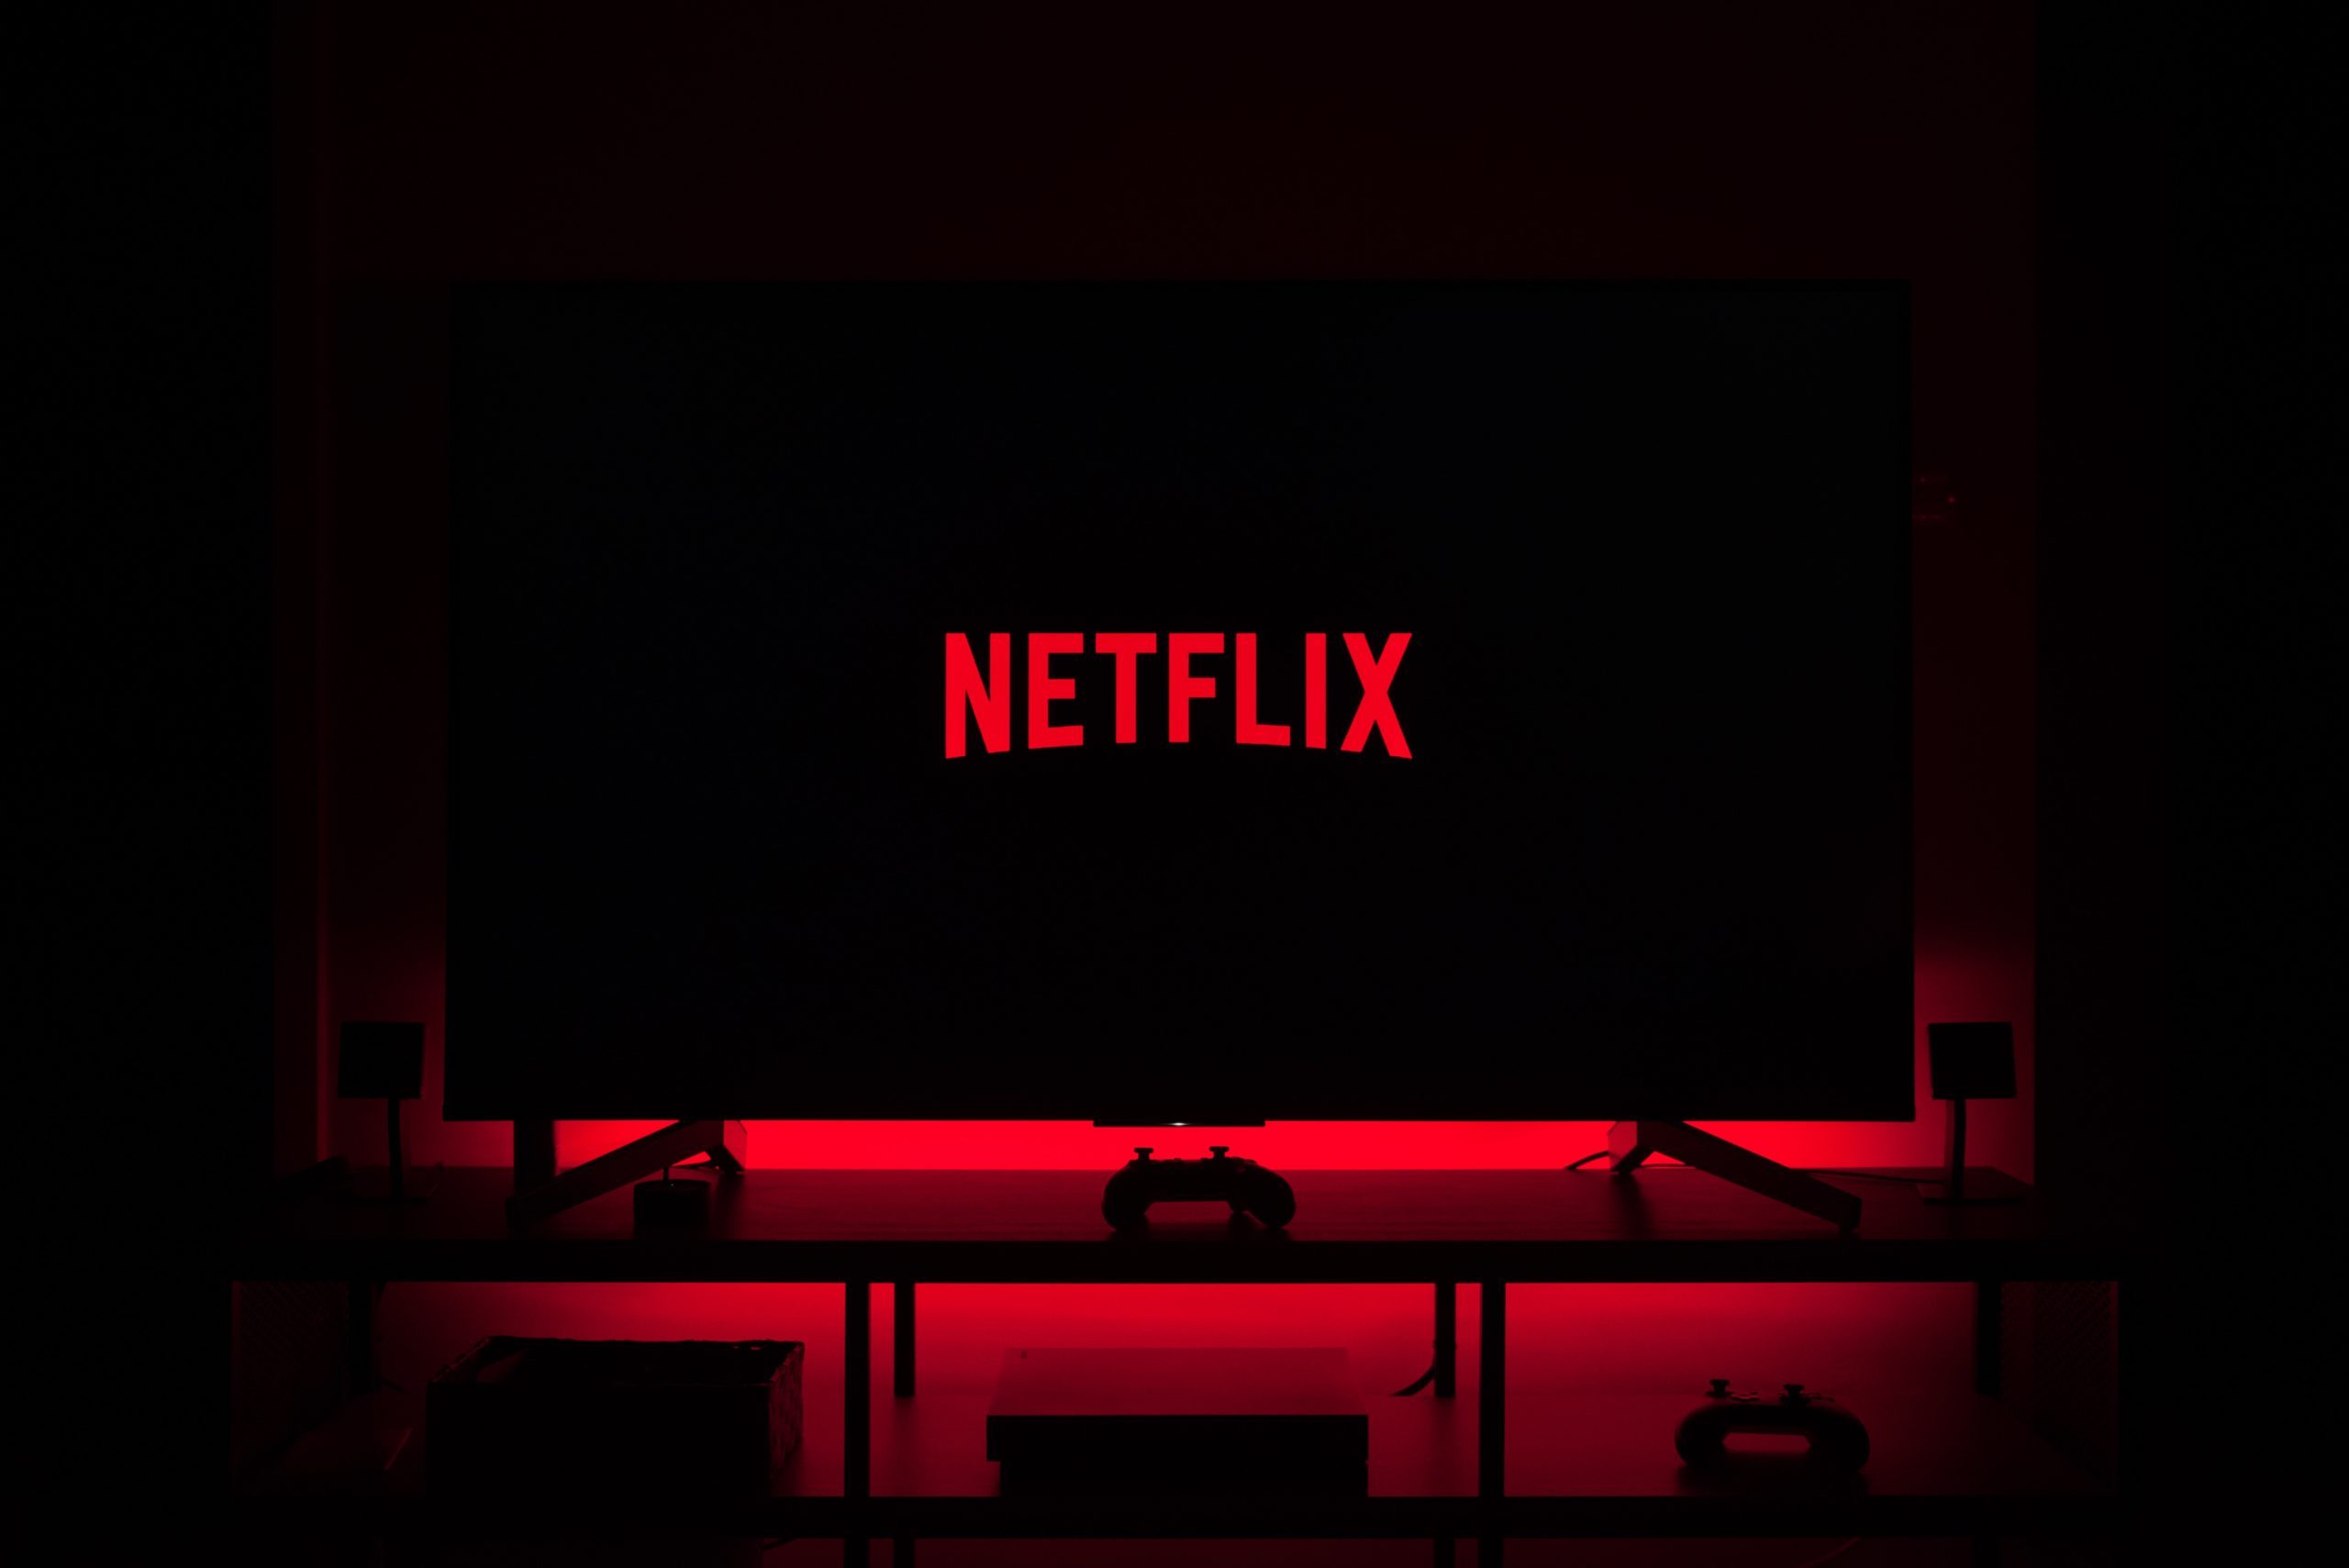 Buscas por cancelamento disparam na Netflix com fim do